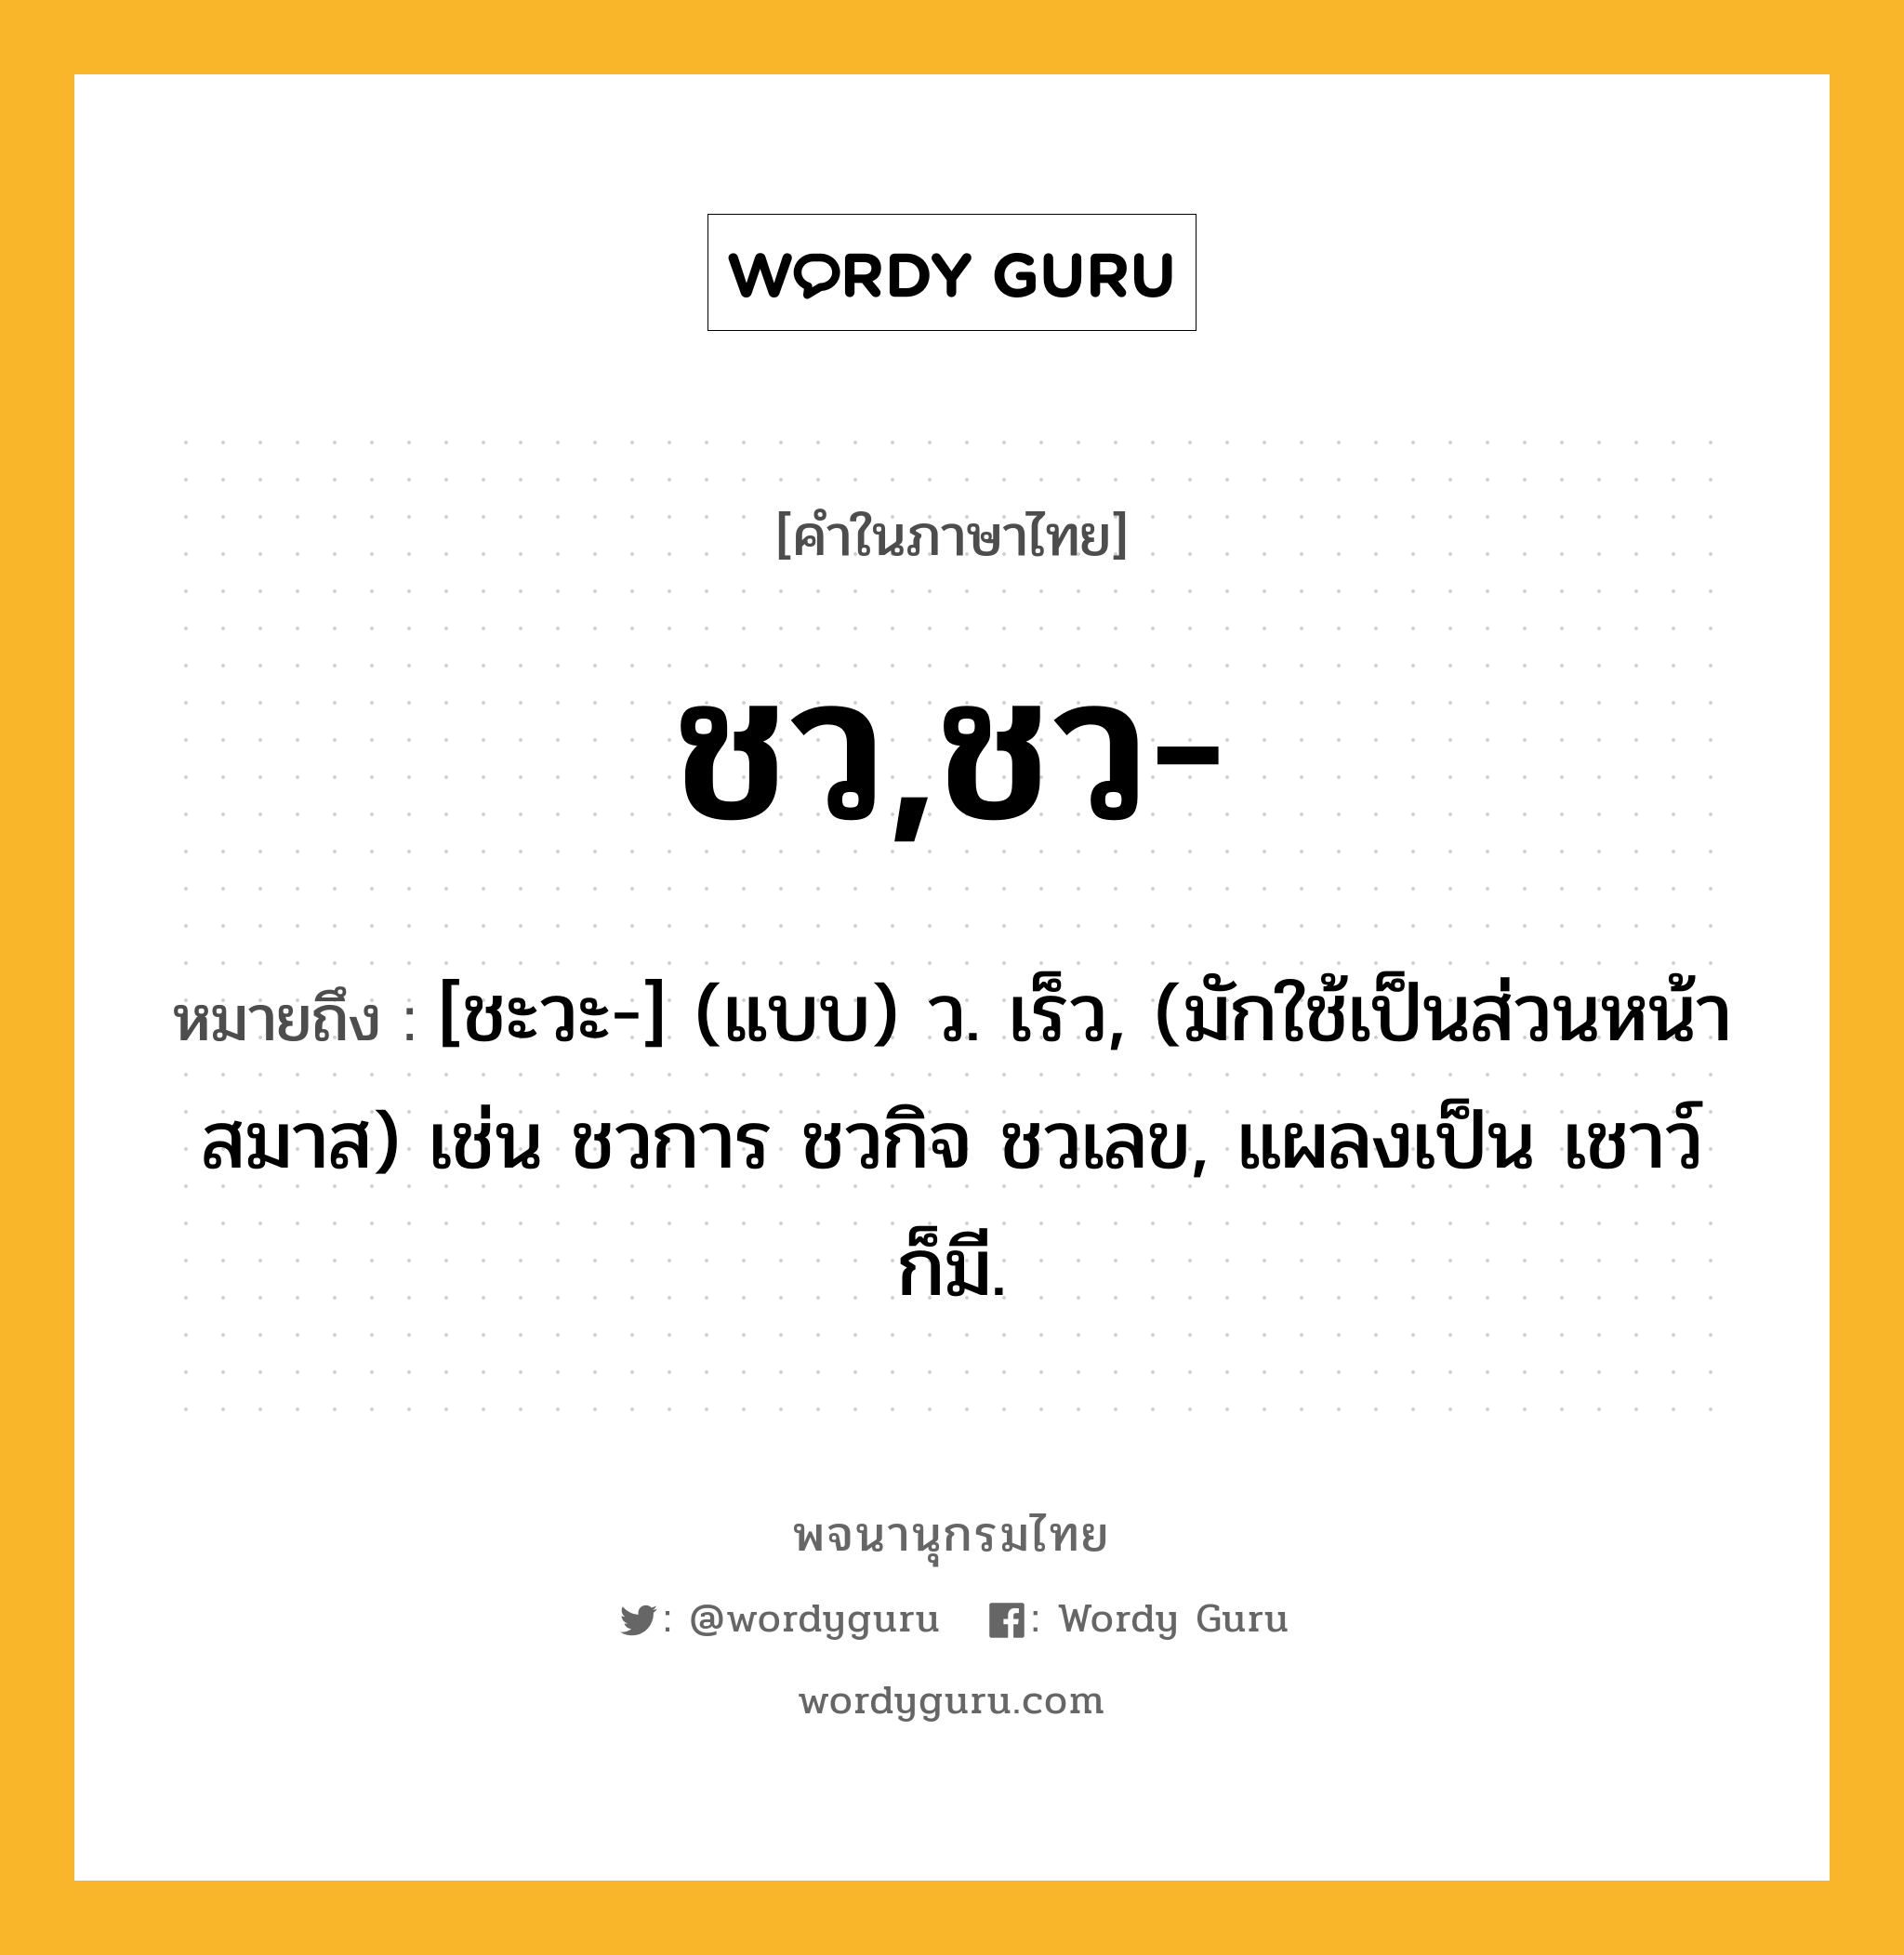 ชว,ชว- หมายถึงอะไร?, คำในภาษาไทย ชว,ชว- หมายถึง [ชะวะ-] (แบบ) ว. เร็ว, (มักใช้เป็นส่วนหน้าสมาส) เช่น ชวการ ชวกิจ ชวเลข, แผลงเป็น เชาว์ ก็มี.